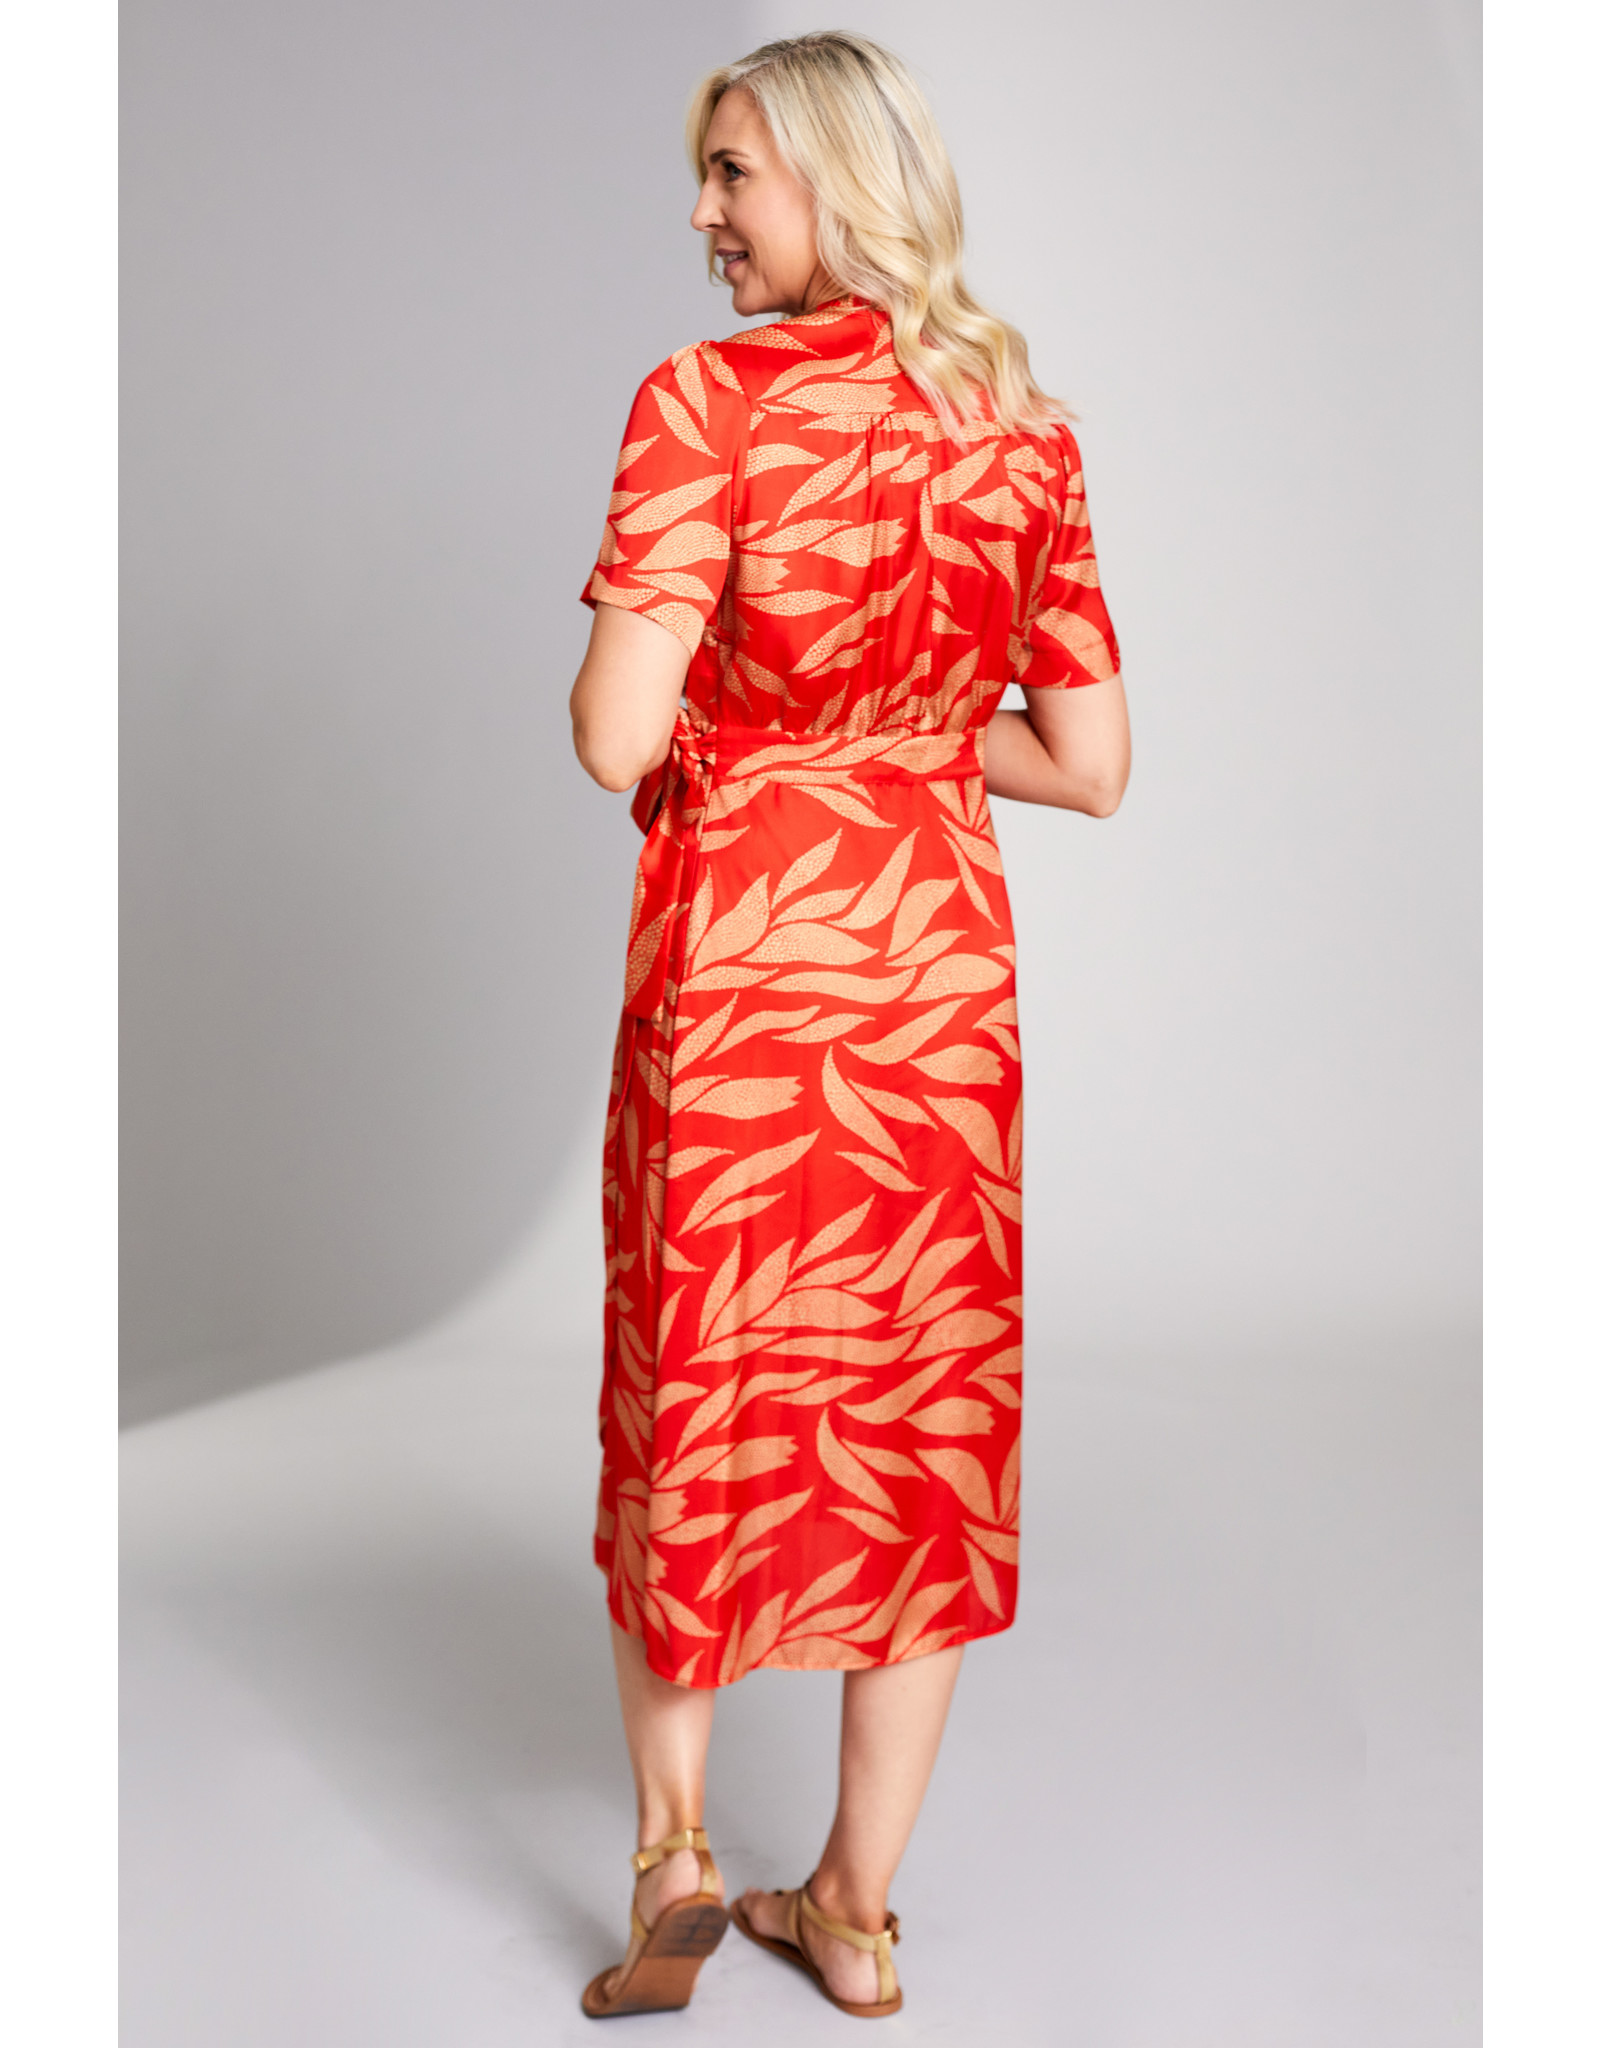 Peruzzi Peruzzi - S23407 - Leaf Print Dress